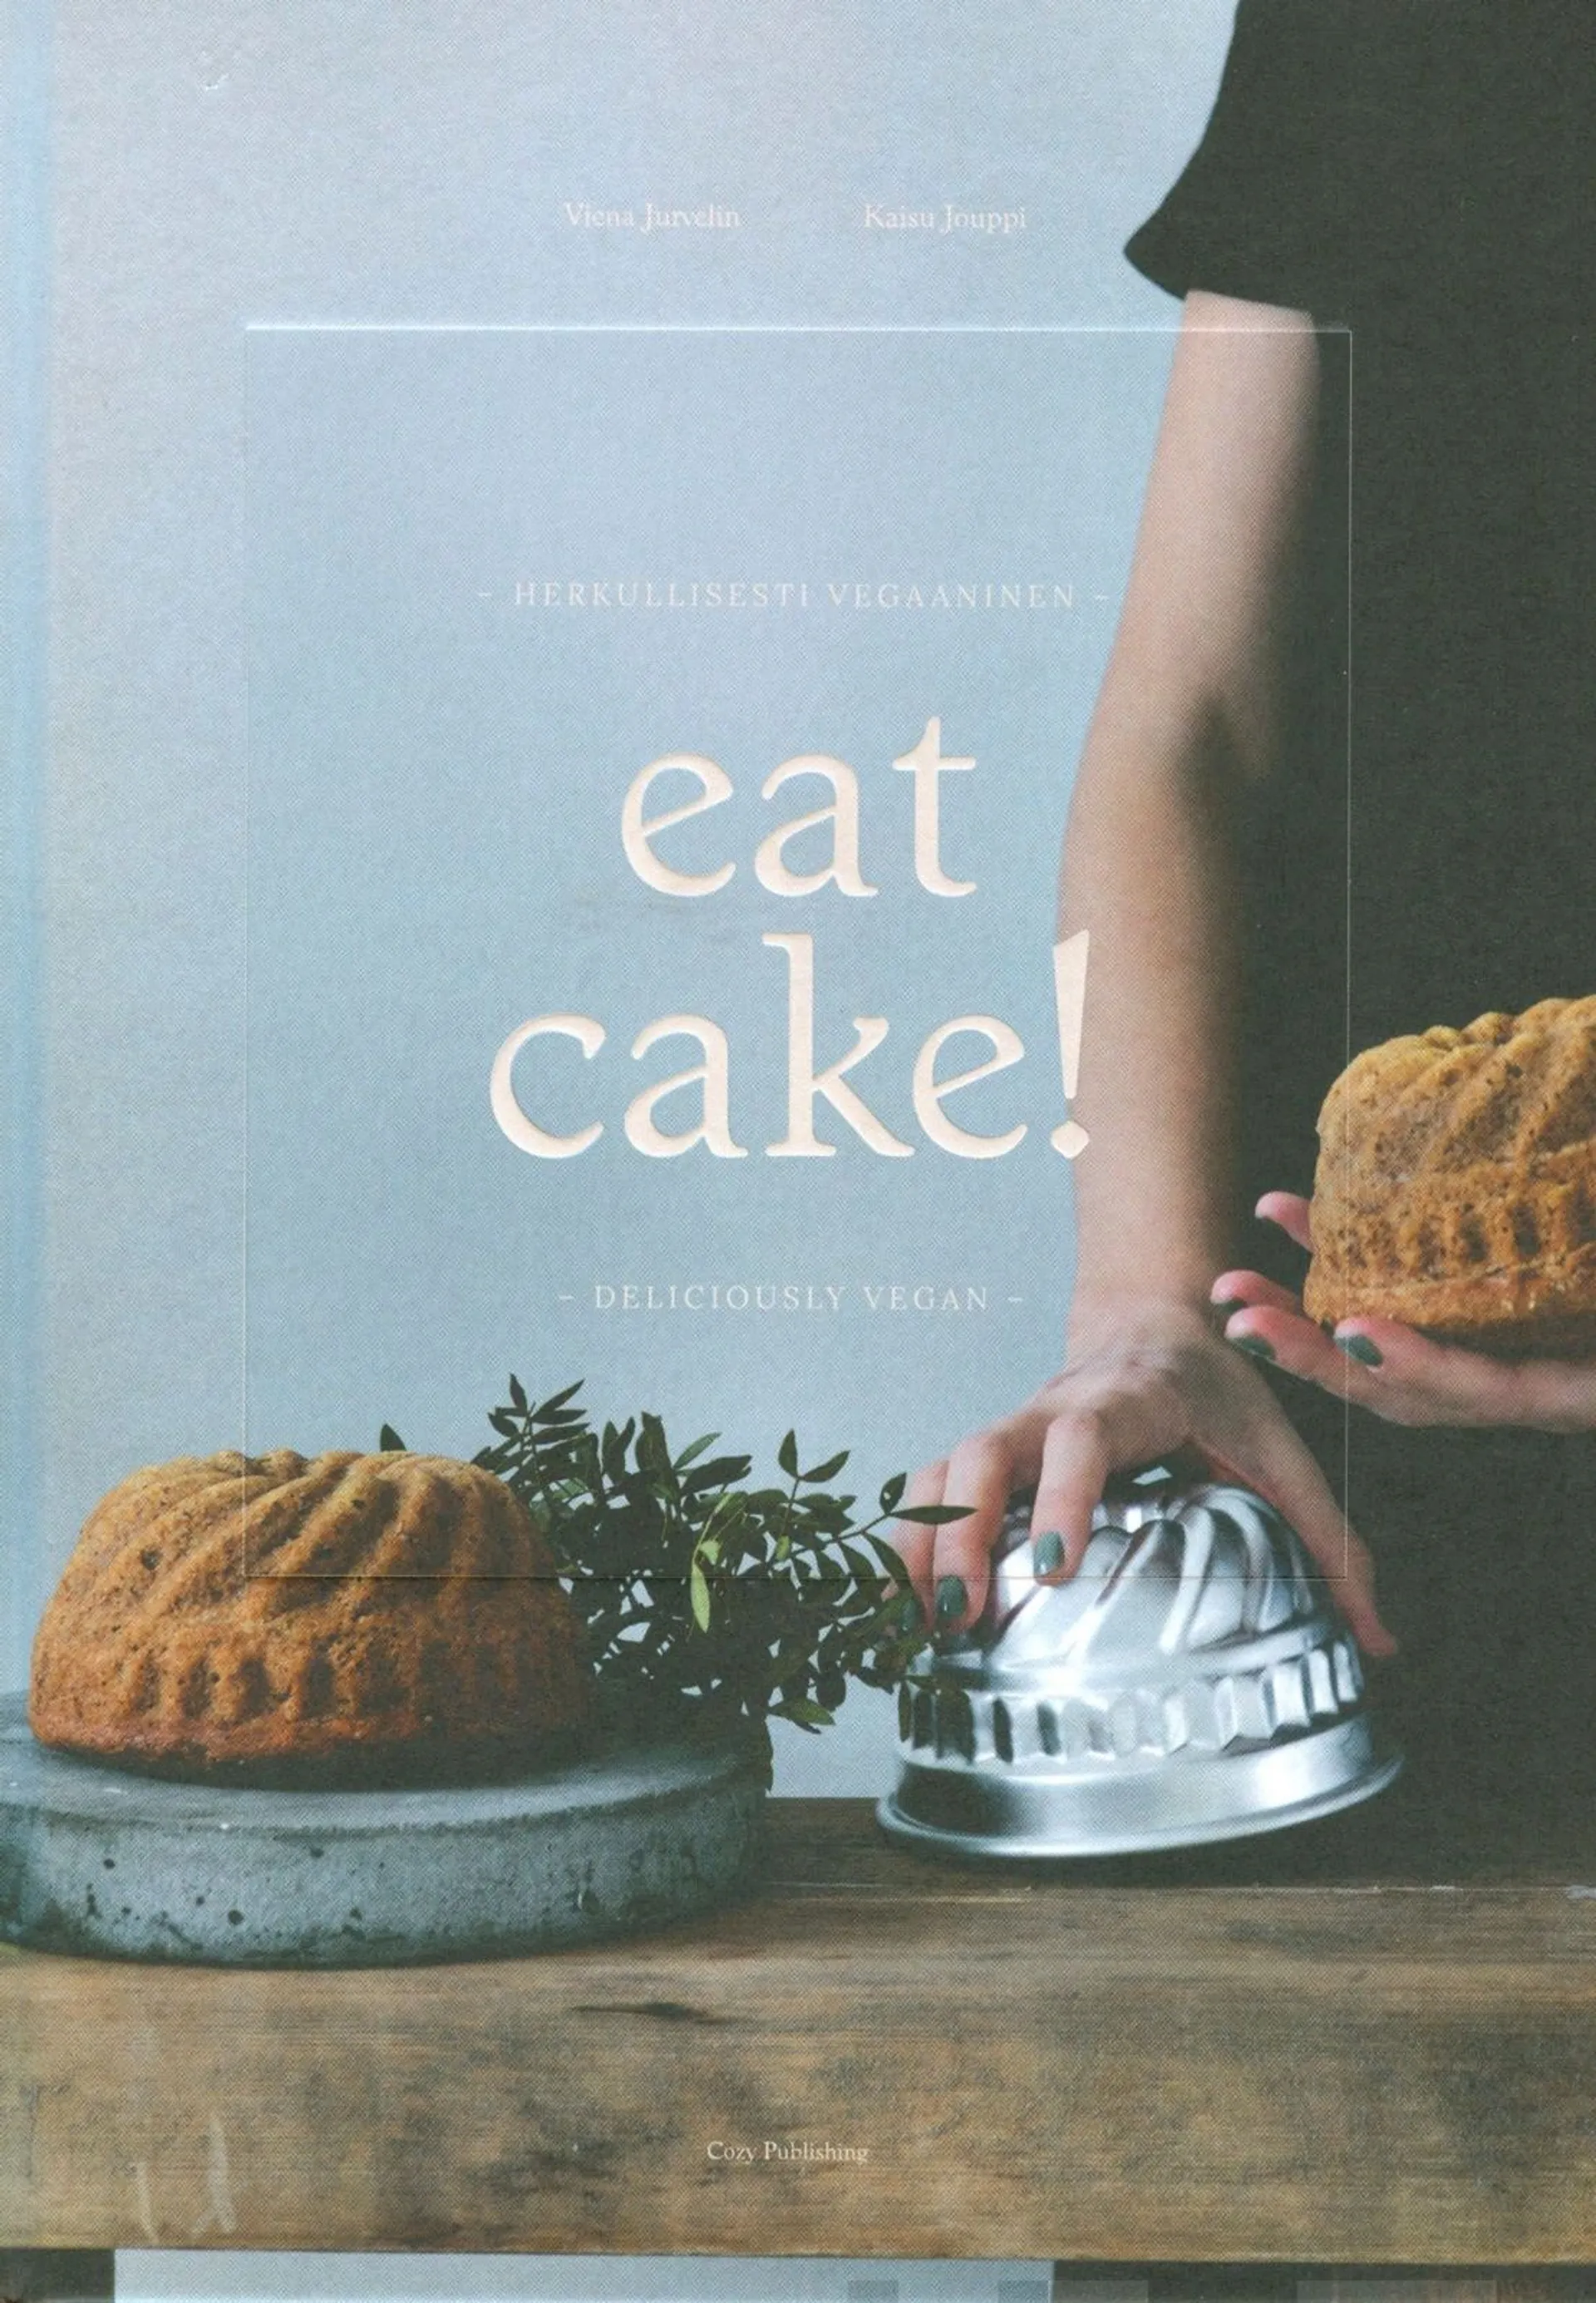 Jurvelin, Let's Eat Cake - Herkullisesti vegaaninen - Deliciously Vegan